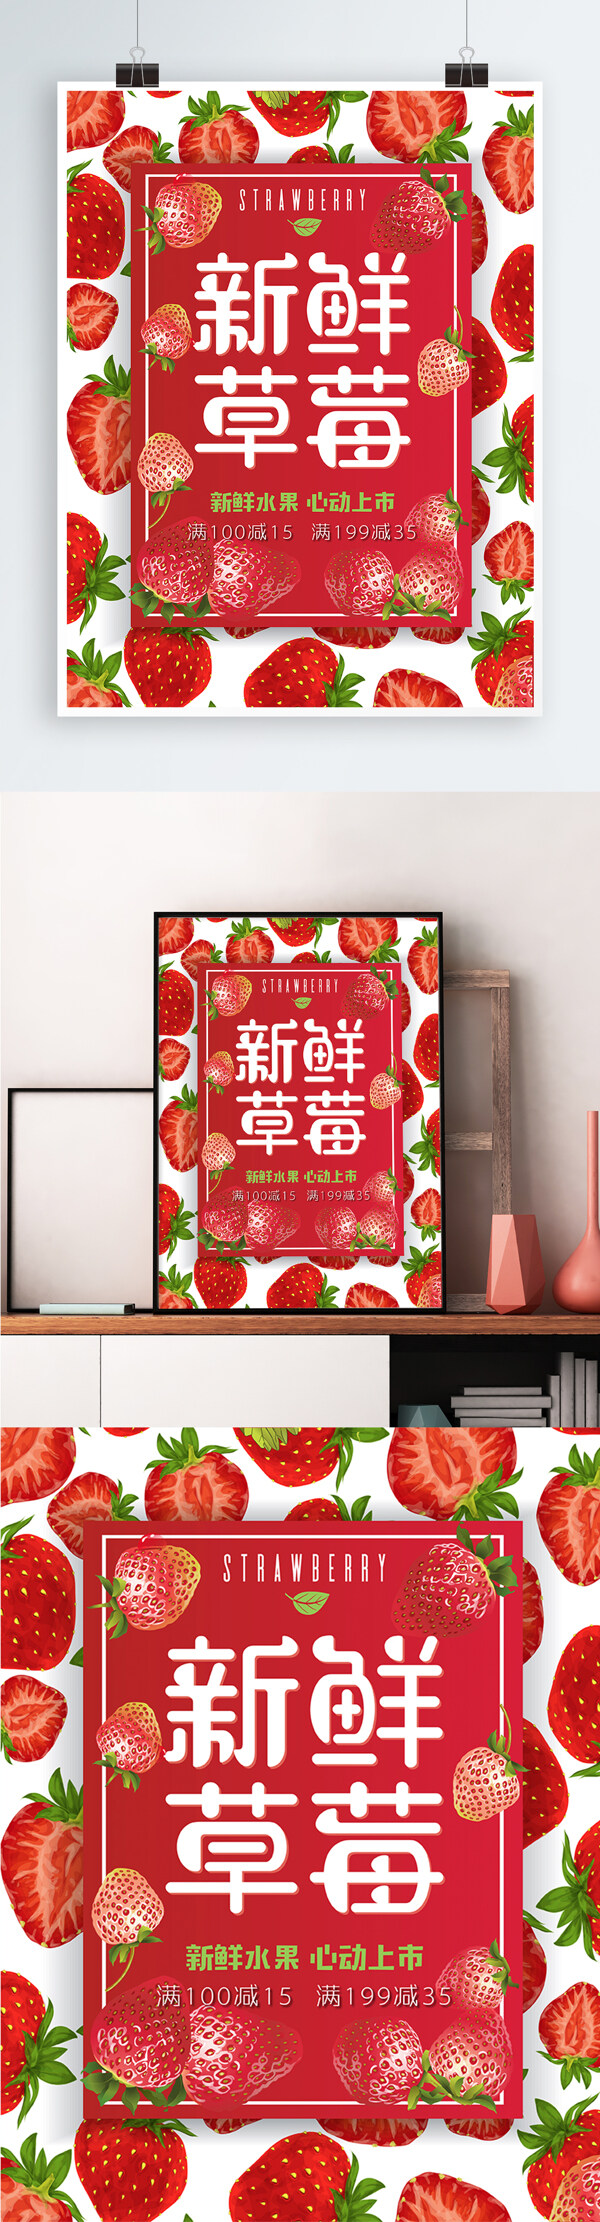 新鲜草莓美食海报AI矢量模板